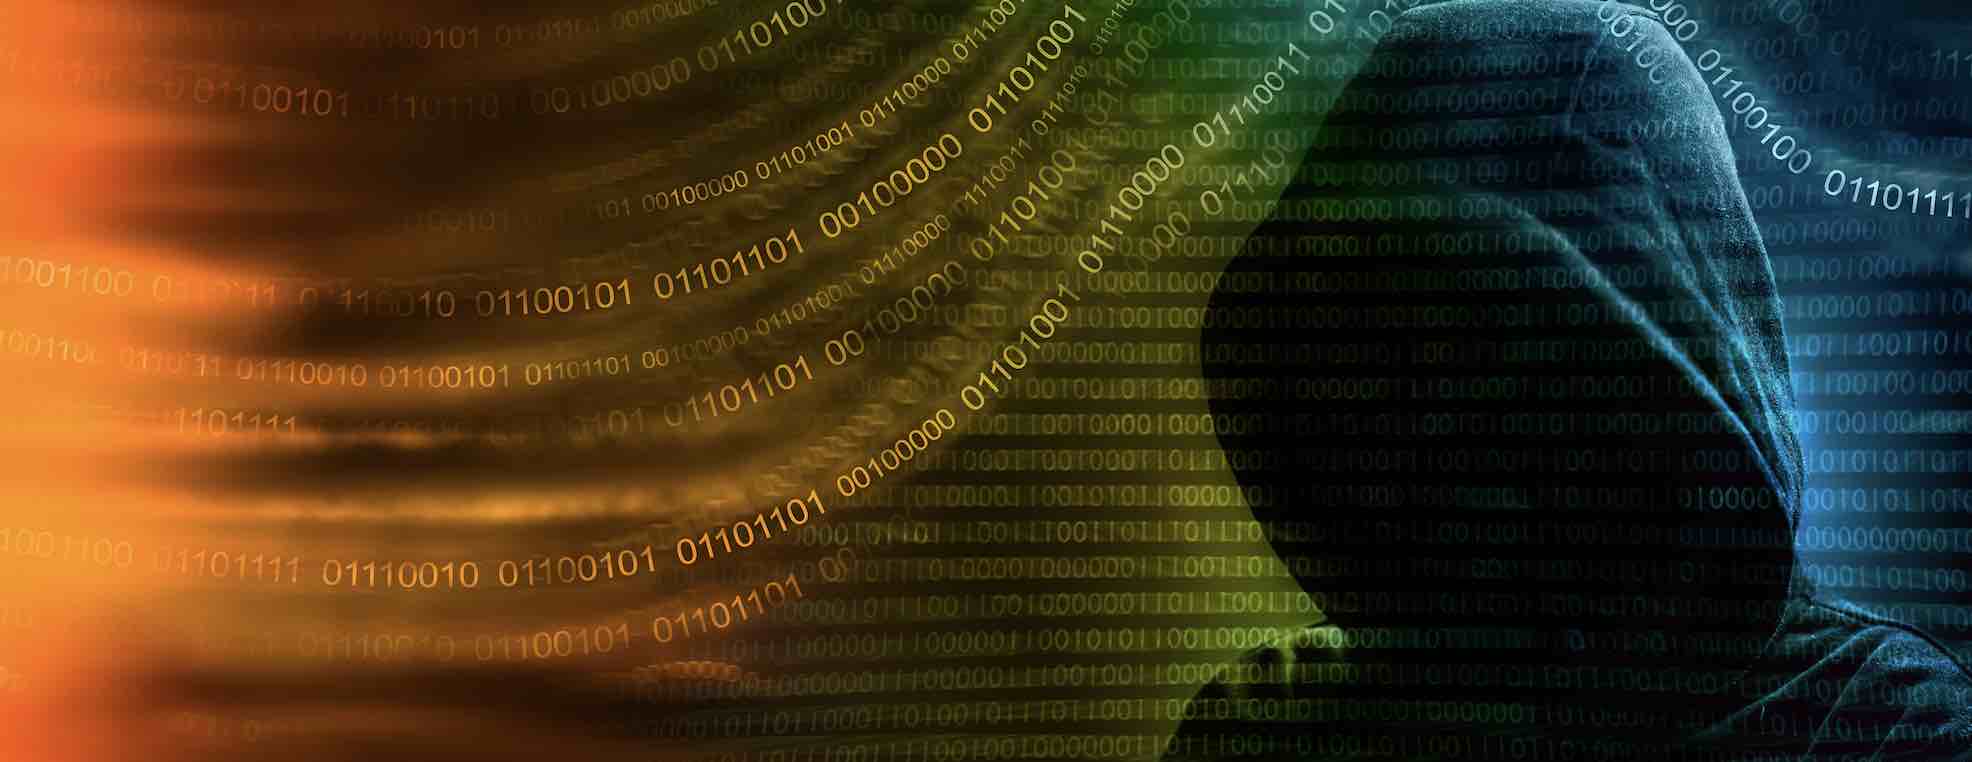 Hackers stole Okta Github code repo